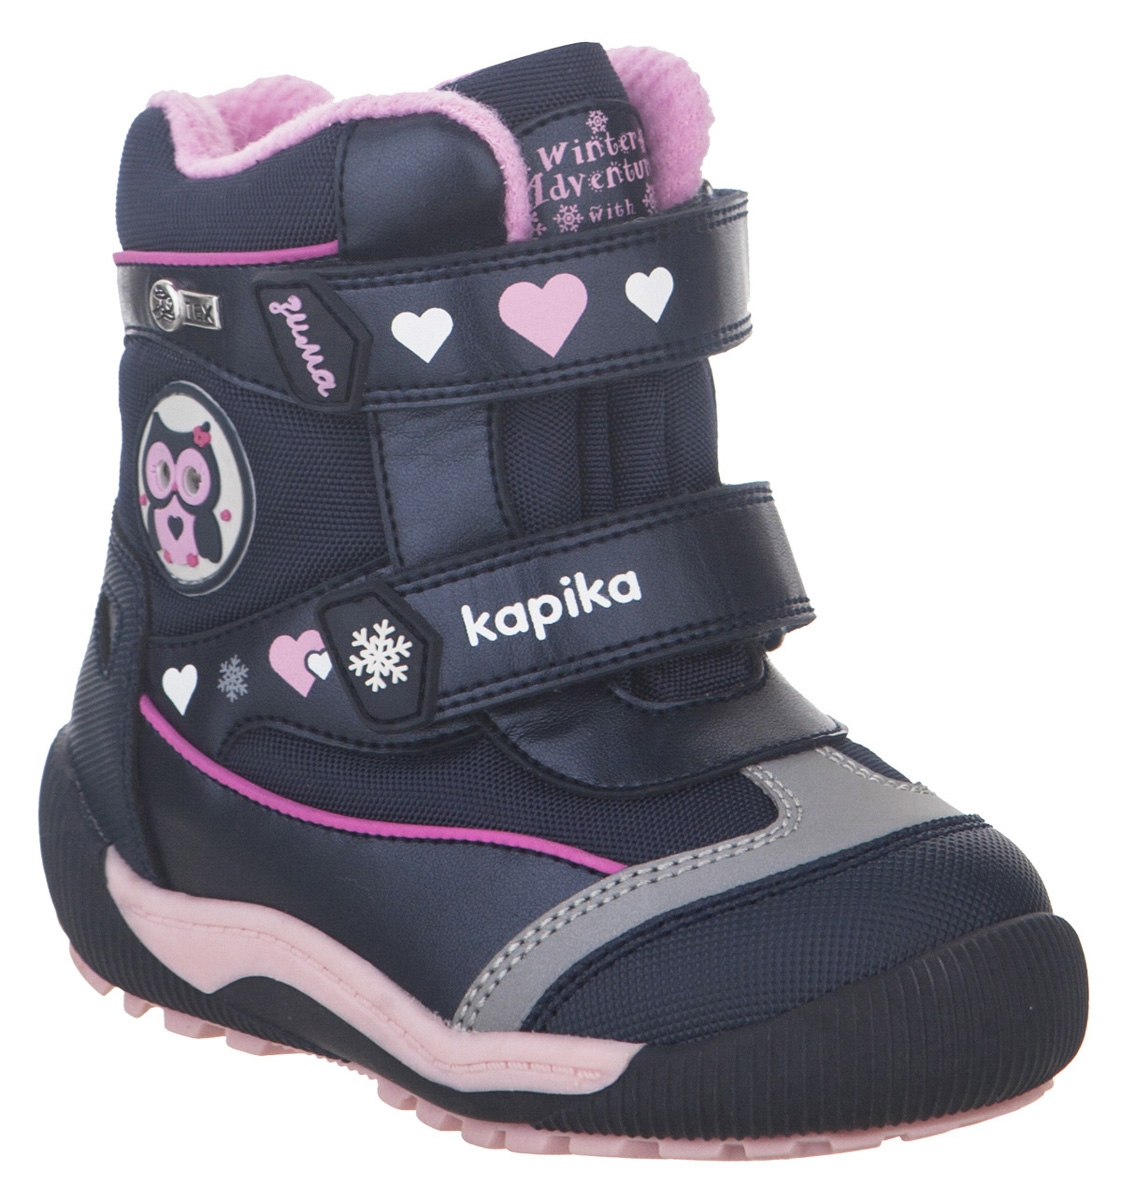 Ботинки для девочки Kapika KapiTEX, цвет: темно-синий. 41215-1. Размер 25